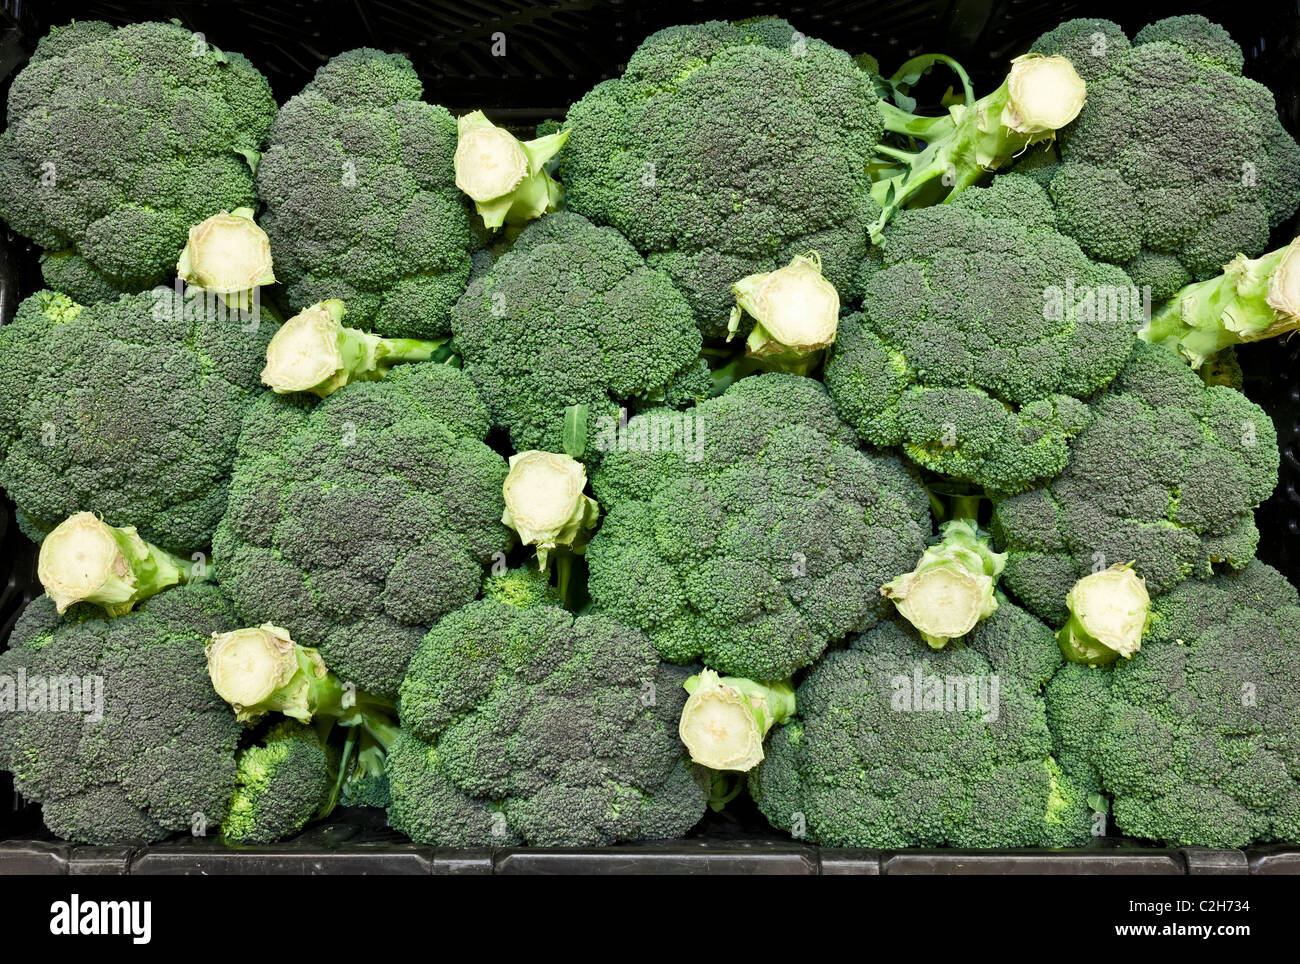 Anzeige der Brokkoli in einem Supermarkt Stockfoto